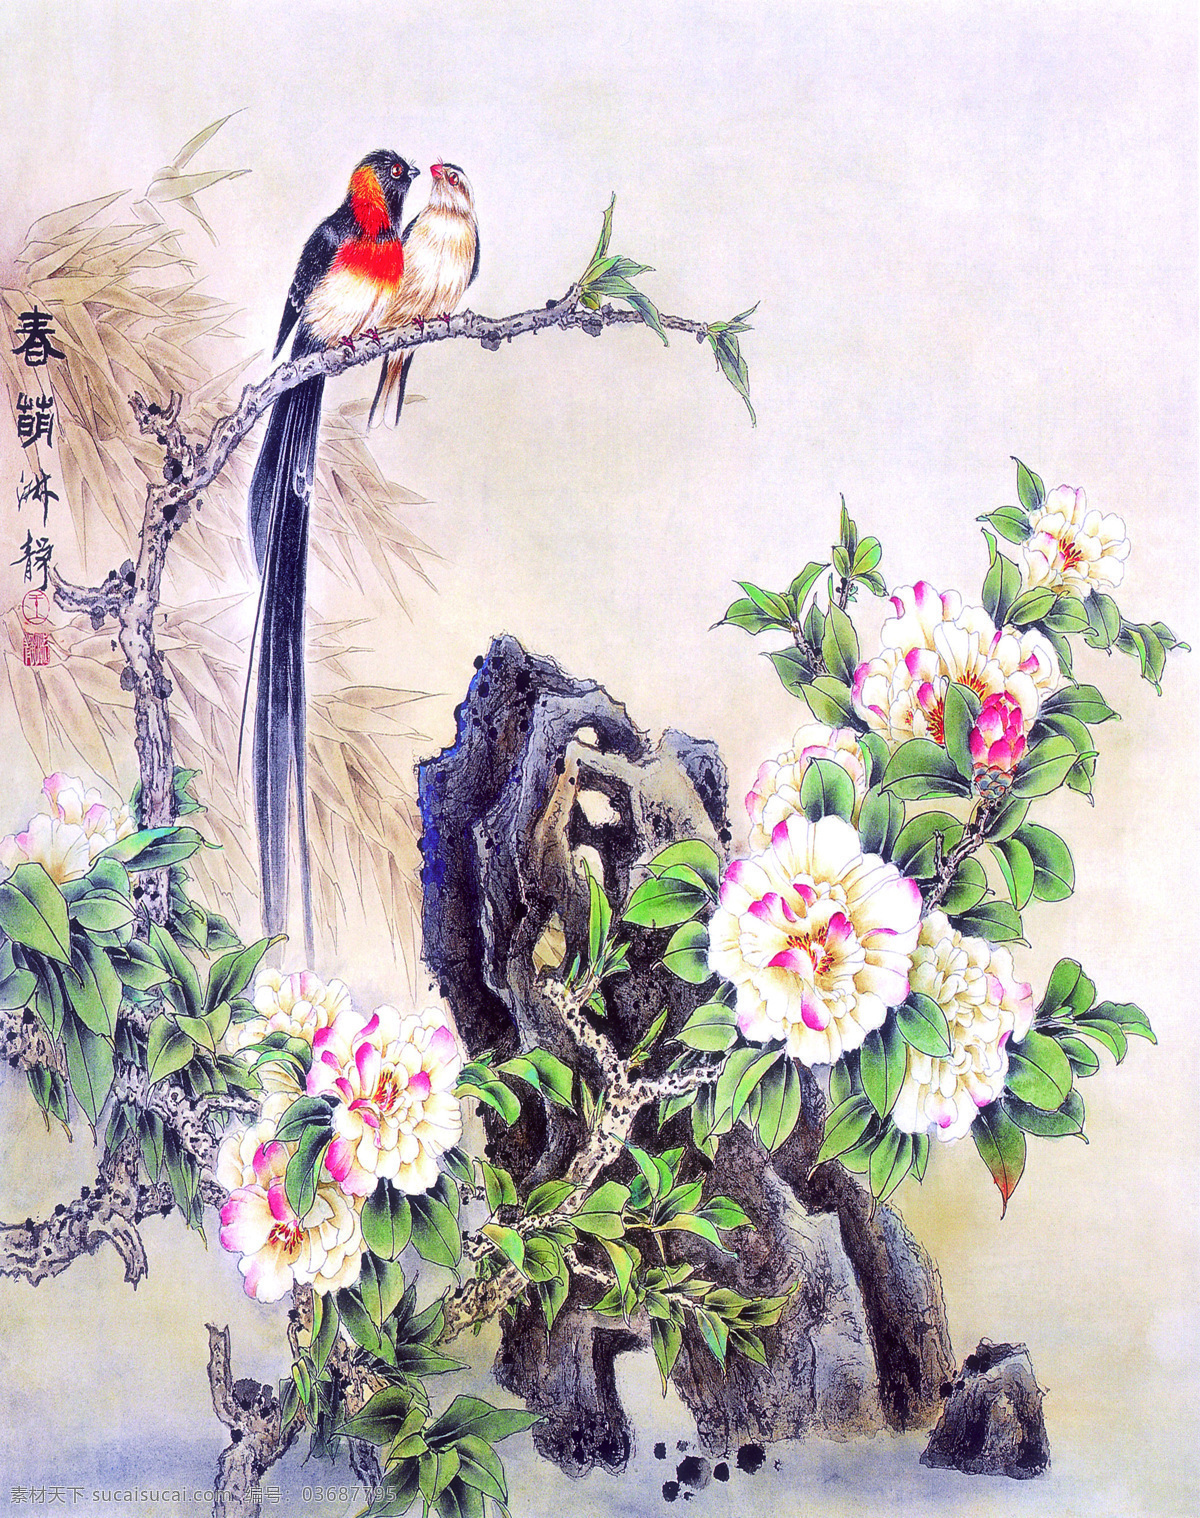 国画 牡丹 飞鸟 中国画 绘画艺术 装饰画 牡丹花 书画文字 文化艺术